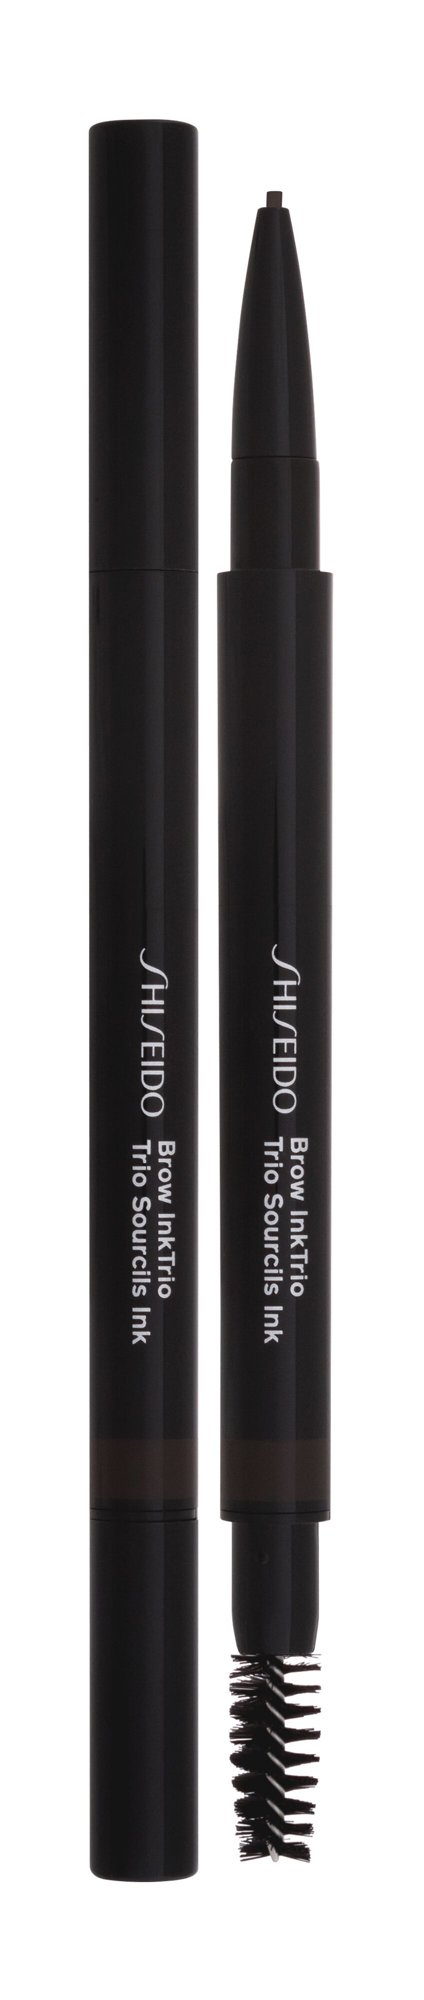 Shiseido Brow InkTrio antakių pieštukas